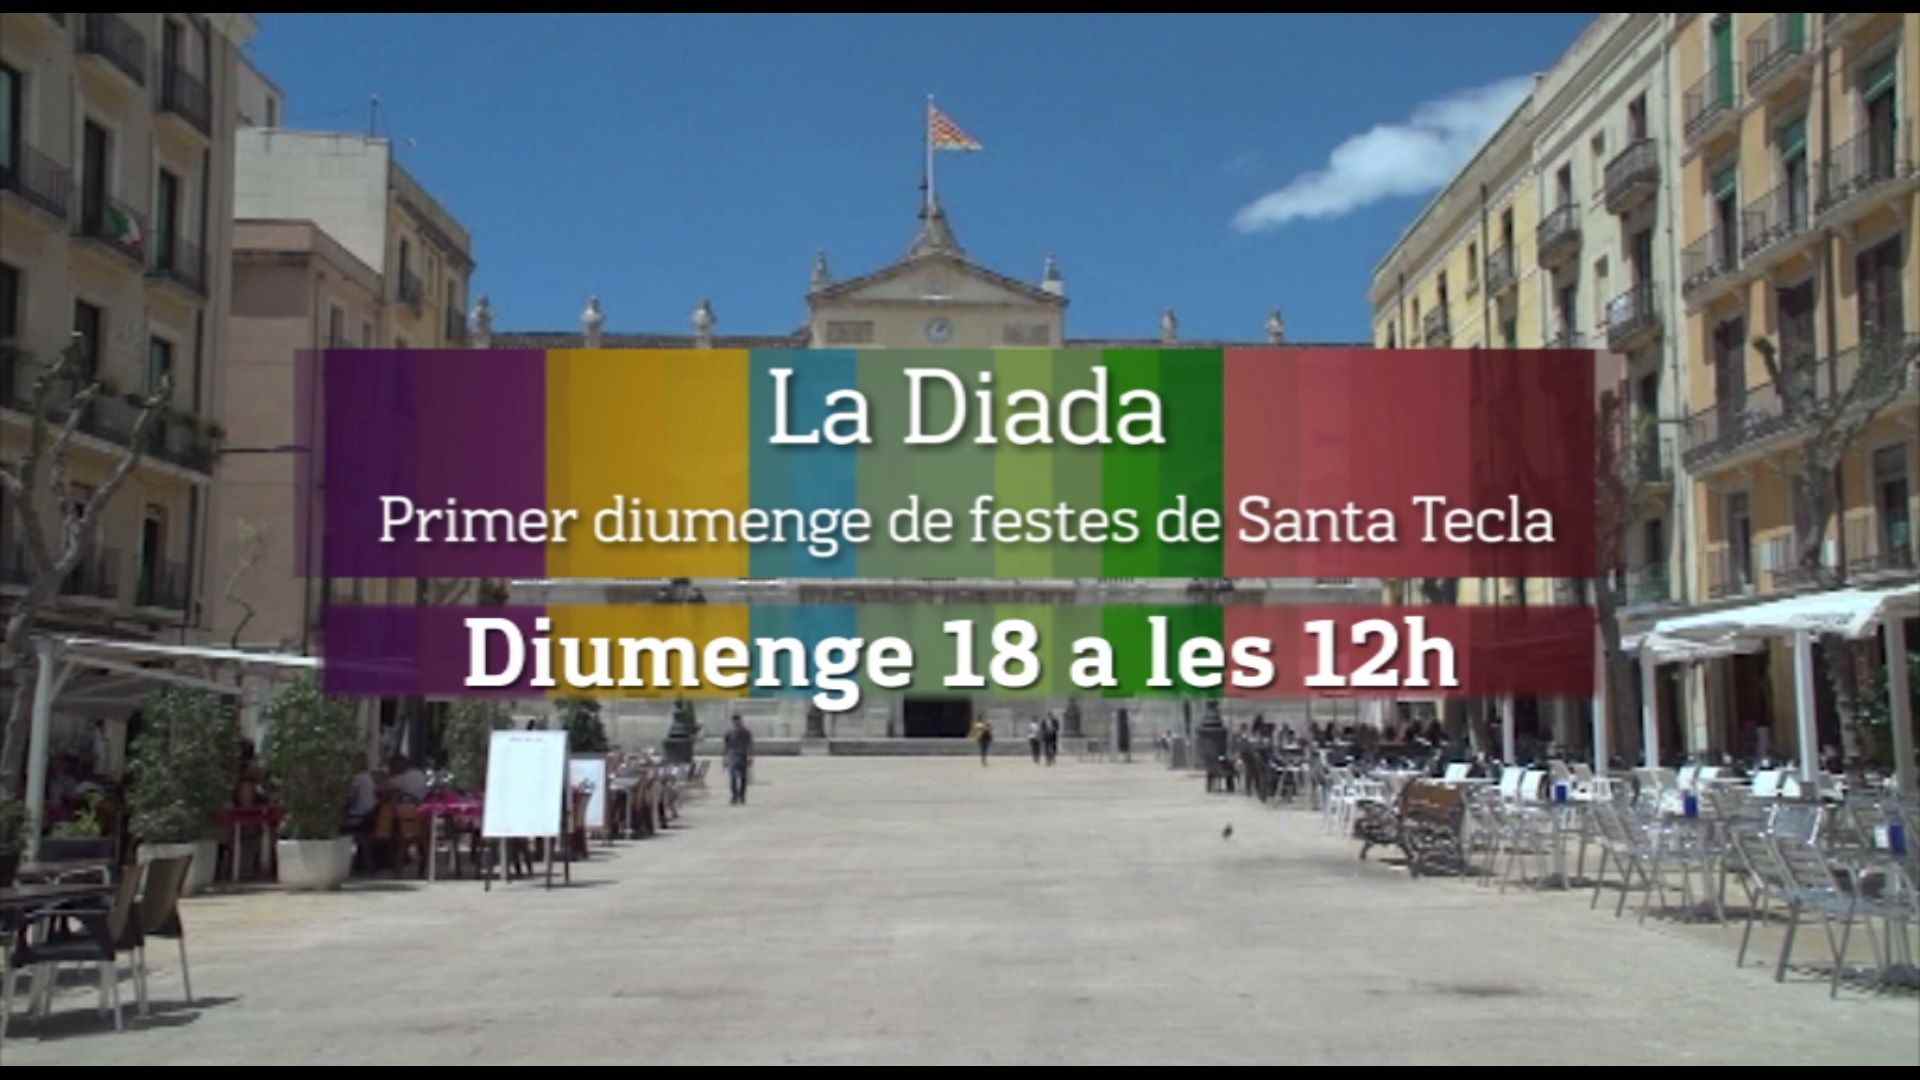 Streaming Diada castellera del primer domingo de las fiestas de Santa Tecla, en Tarragona